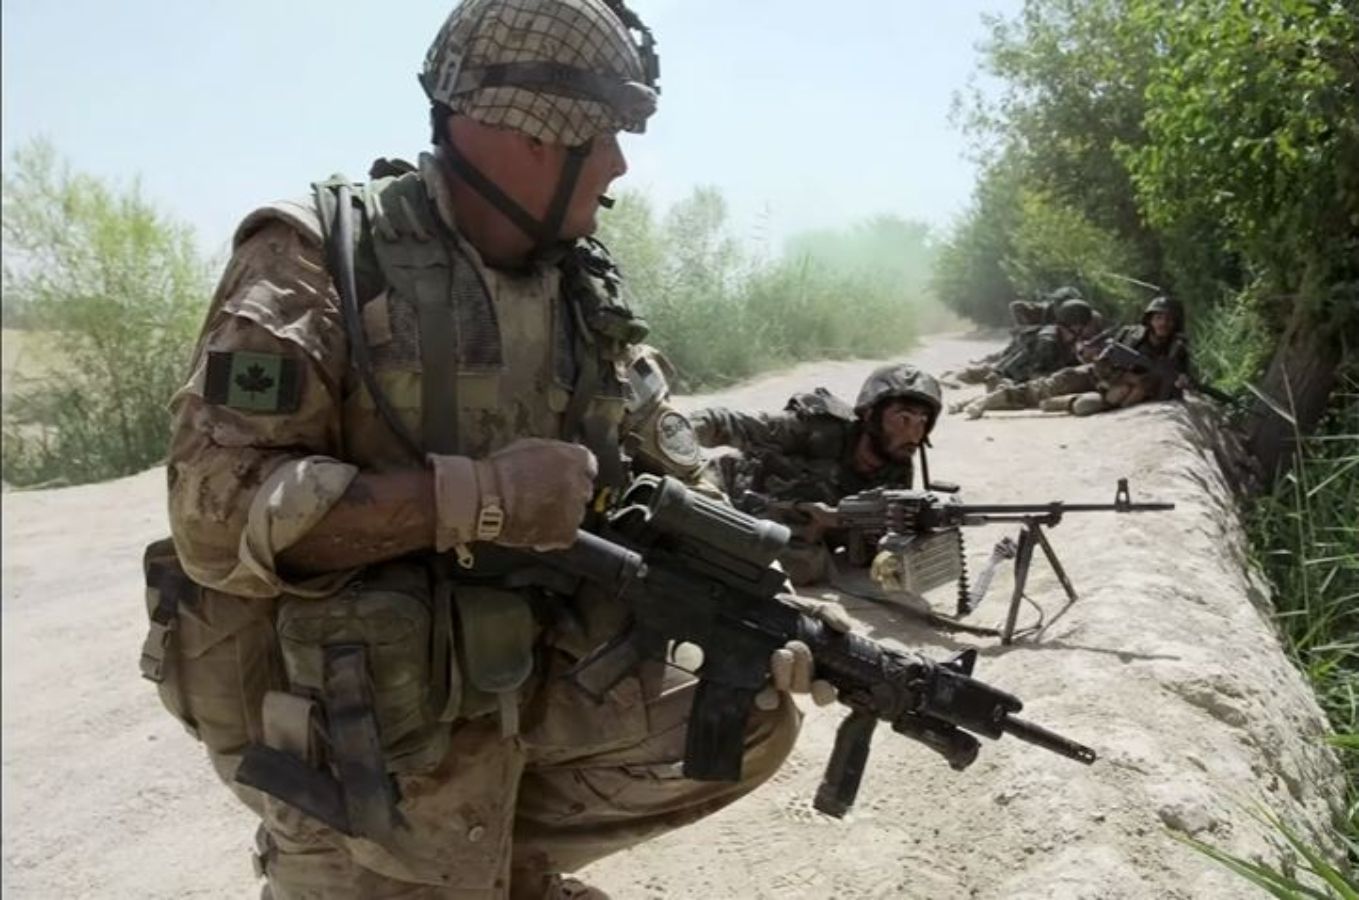 Cinco películas para entender el conflicto de Afganistán